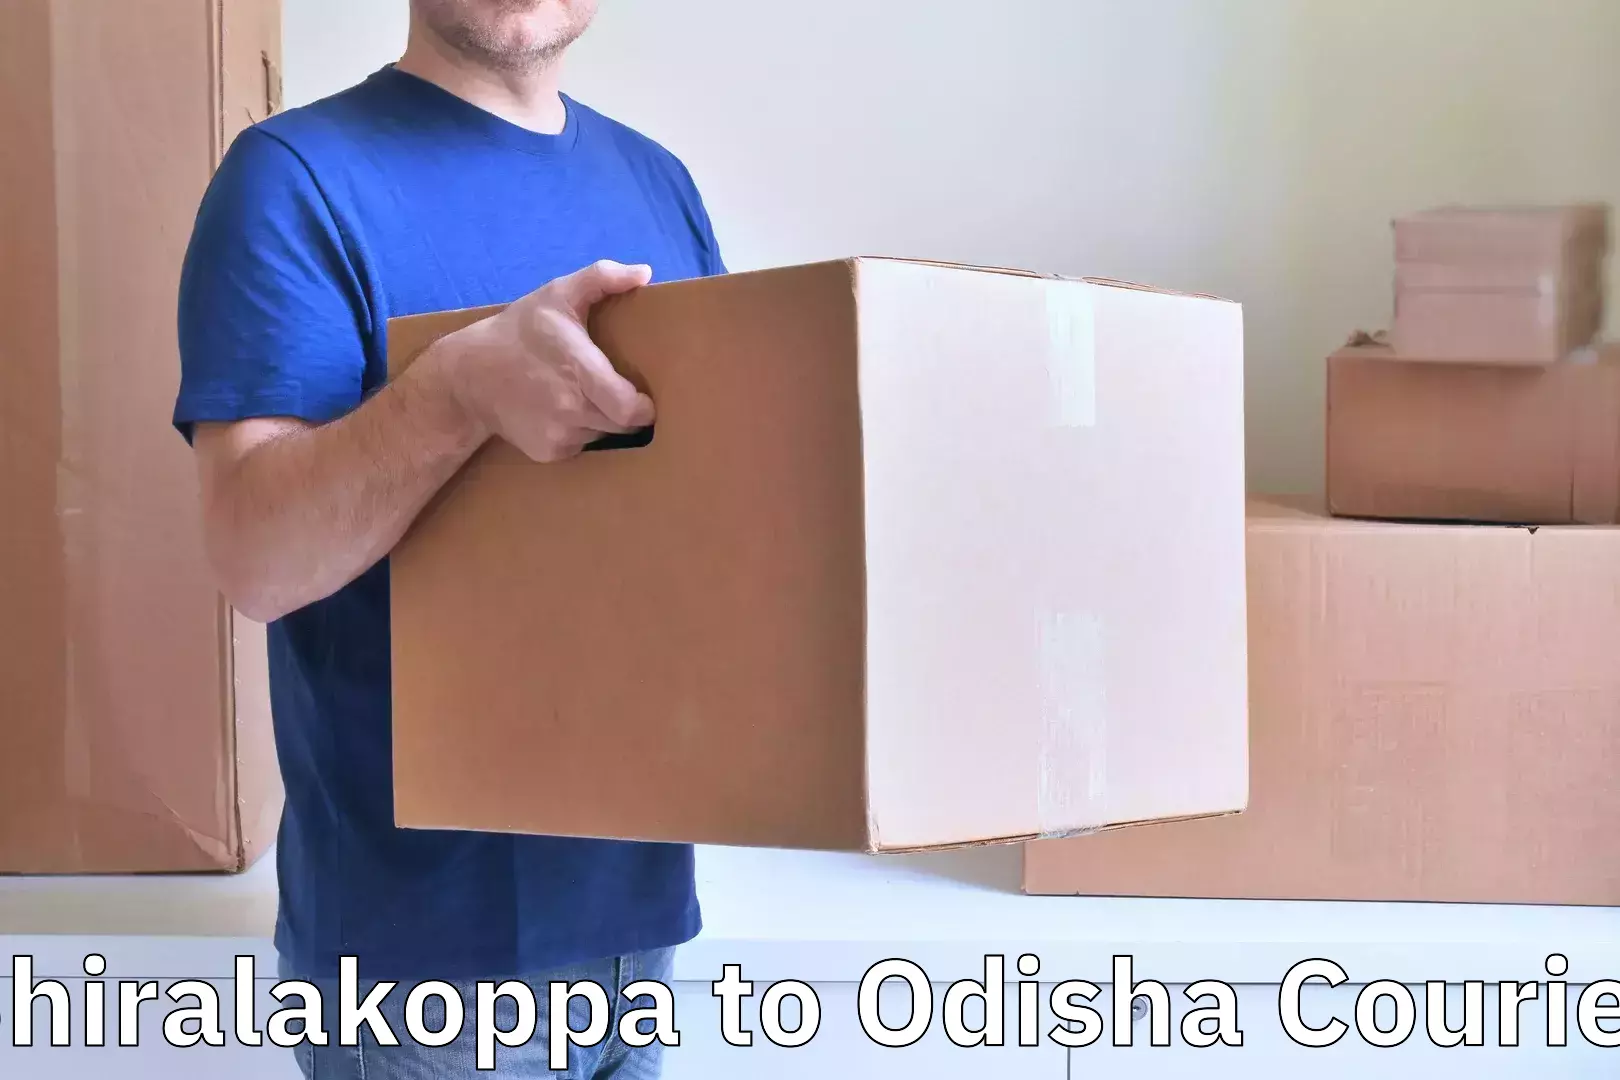 Door-to-door baggage service Shiralakoppa to Odisha